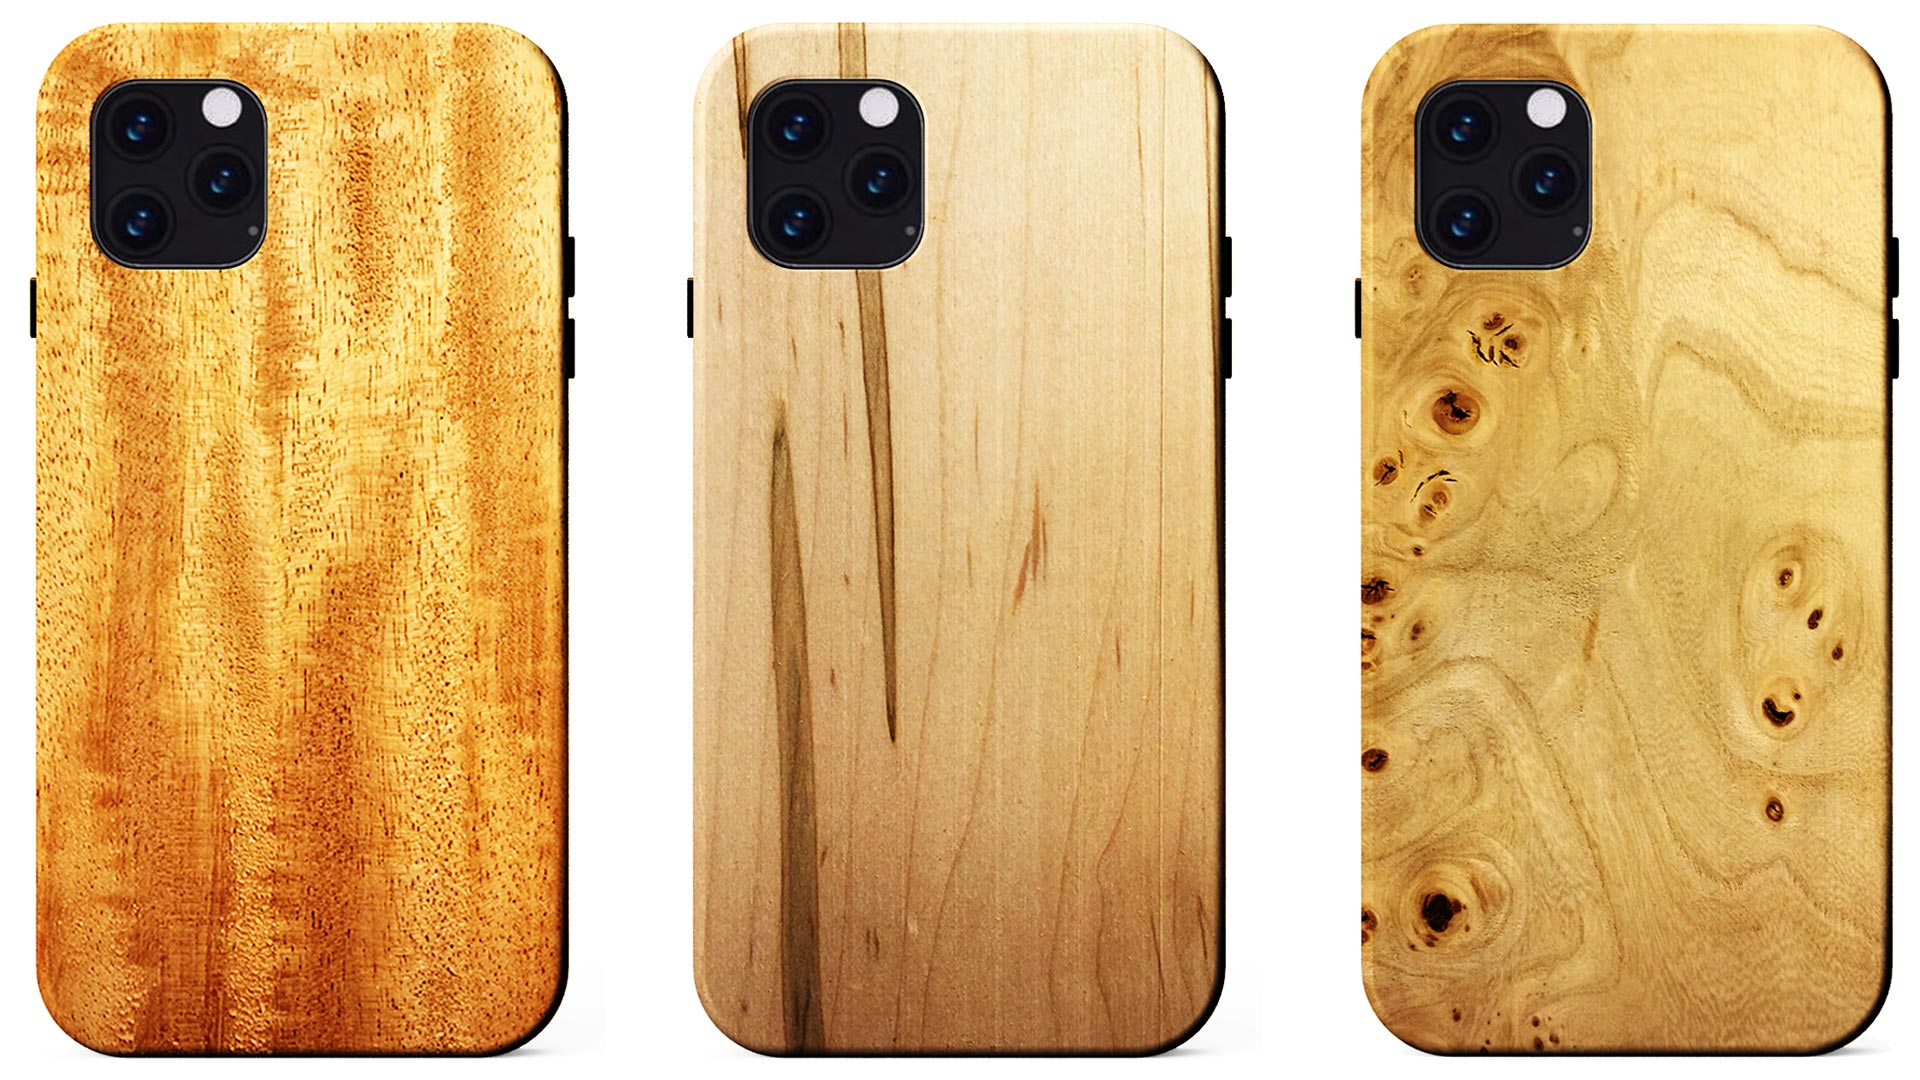 The Wood Casing Range för iPhone 11, 11 Pro och 11 Pro Max från KERF